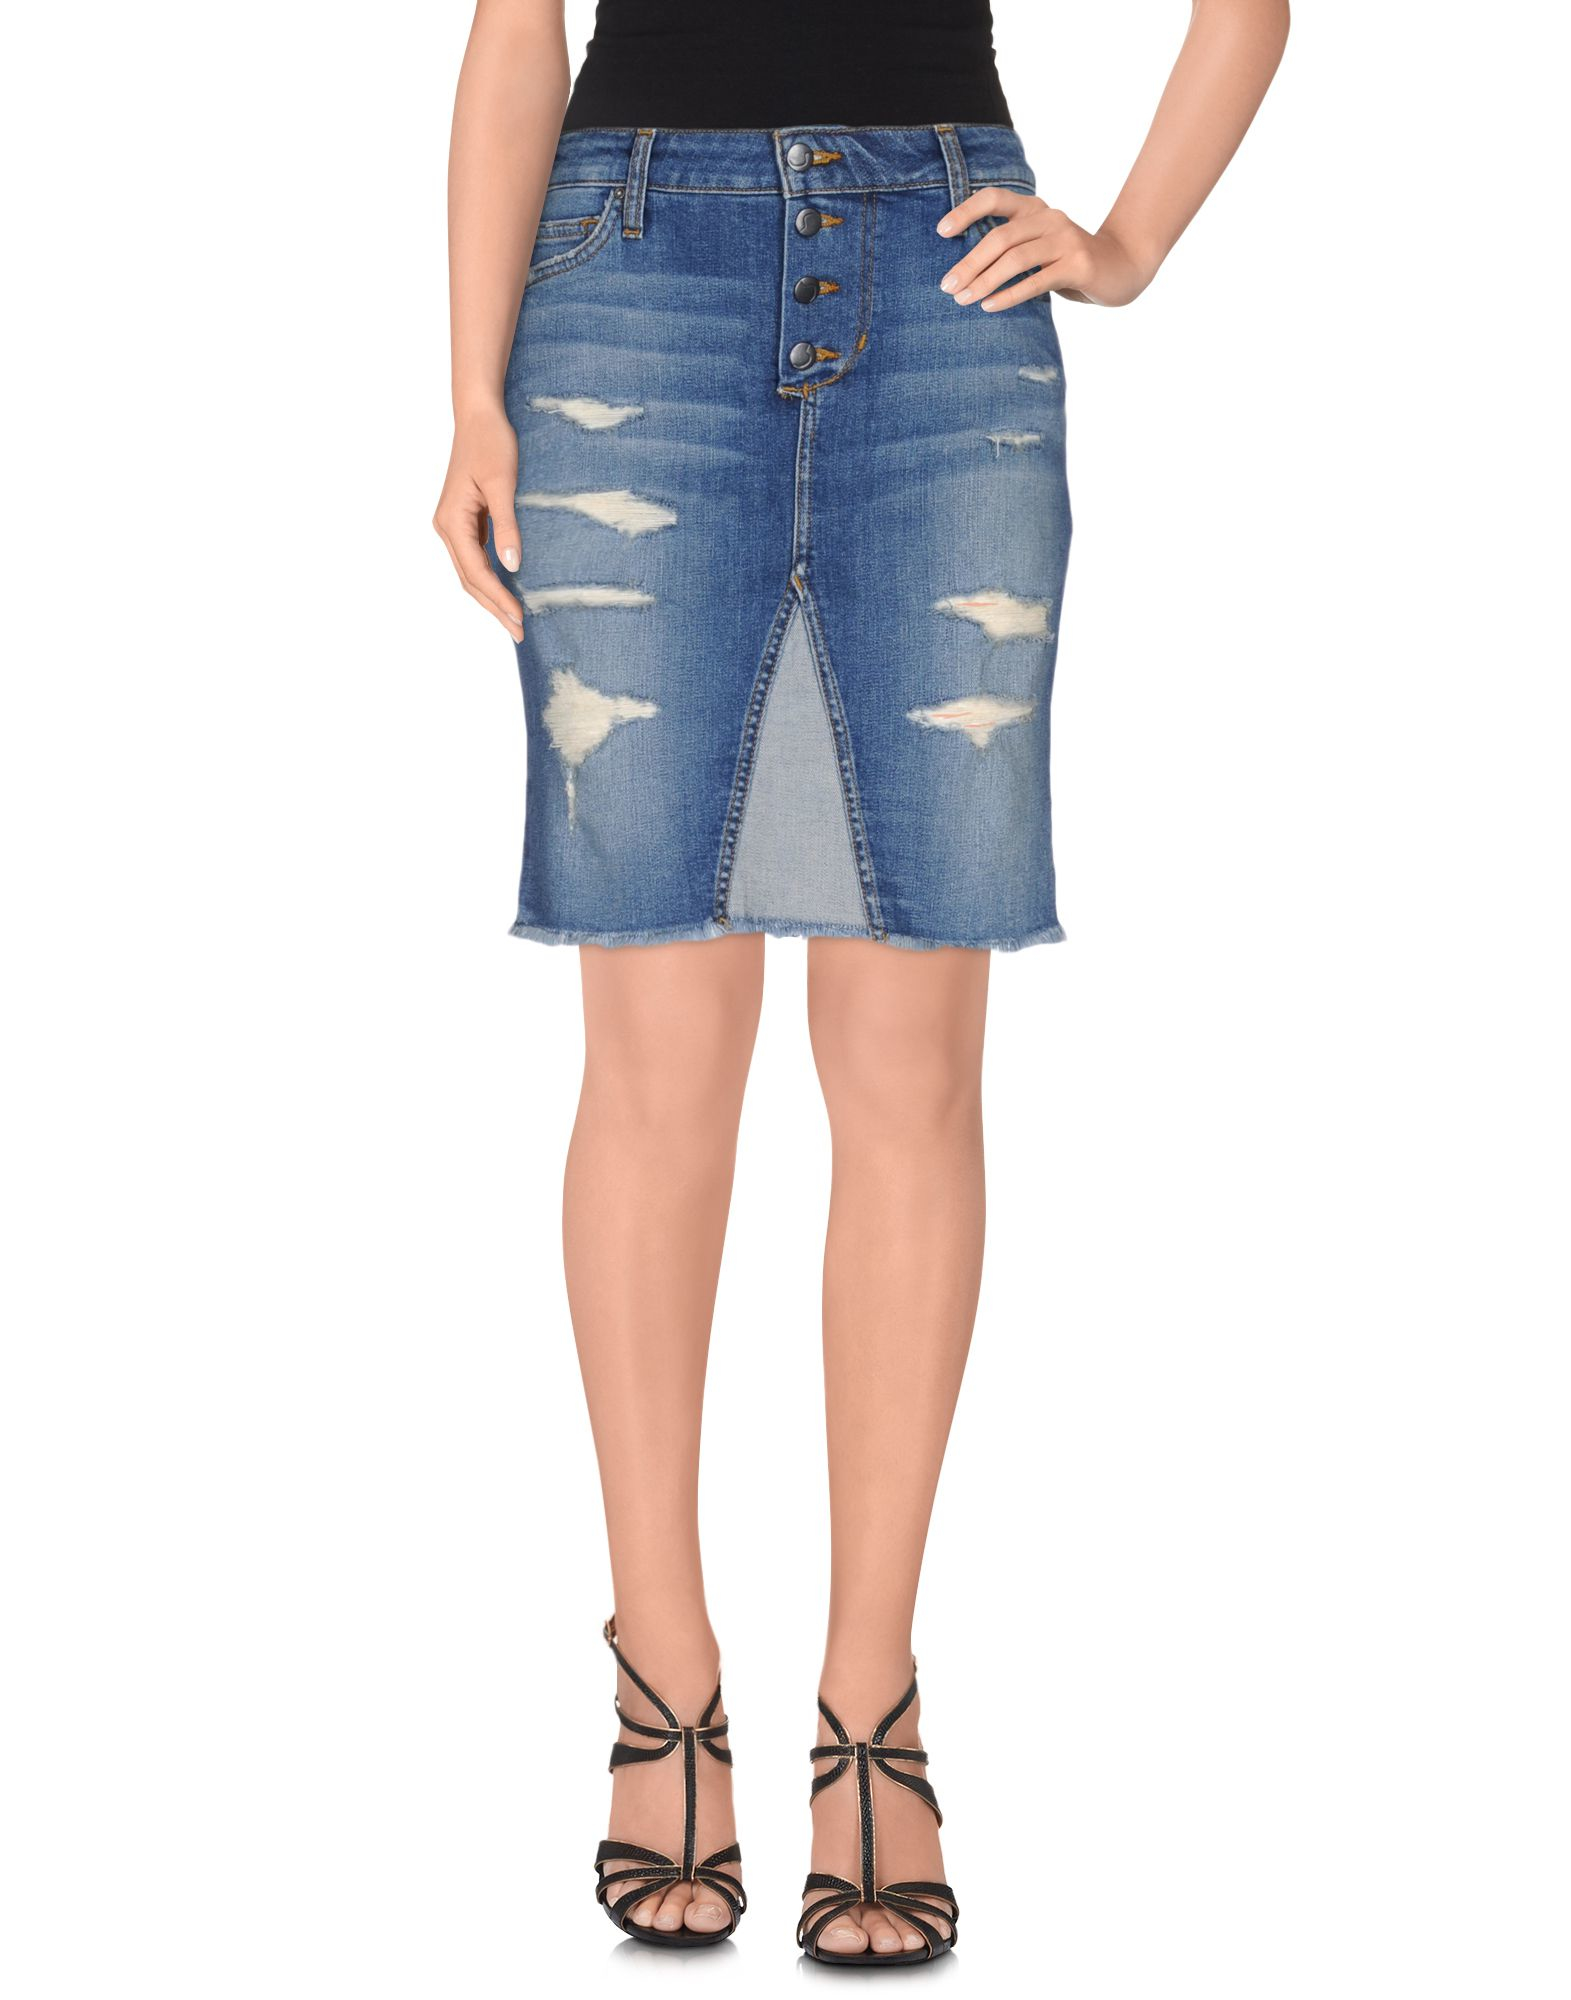 Blue Jeans Skirt 111